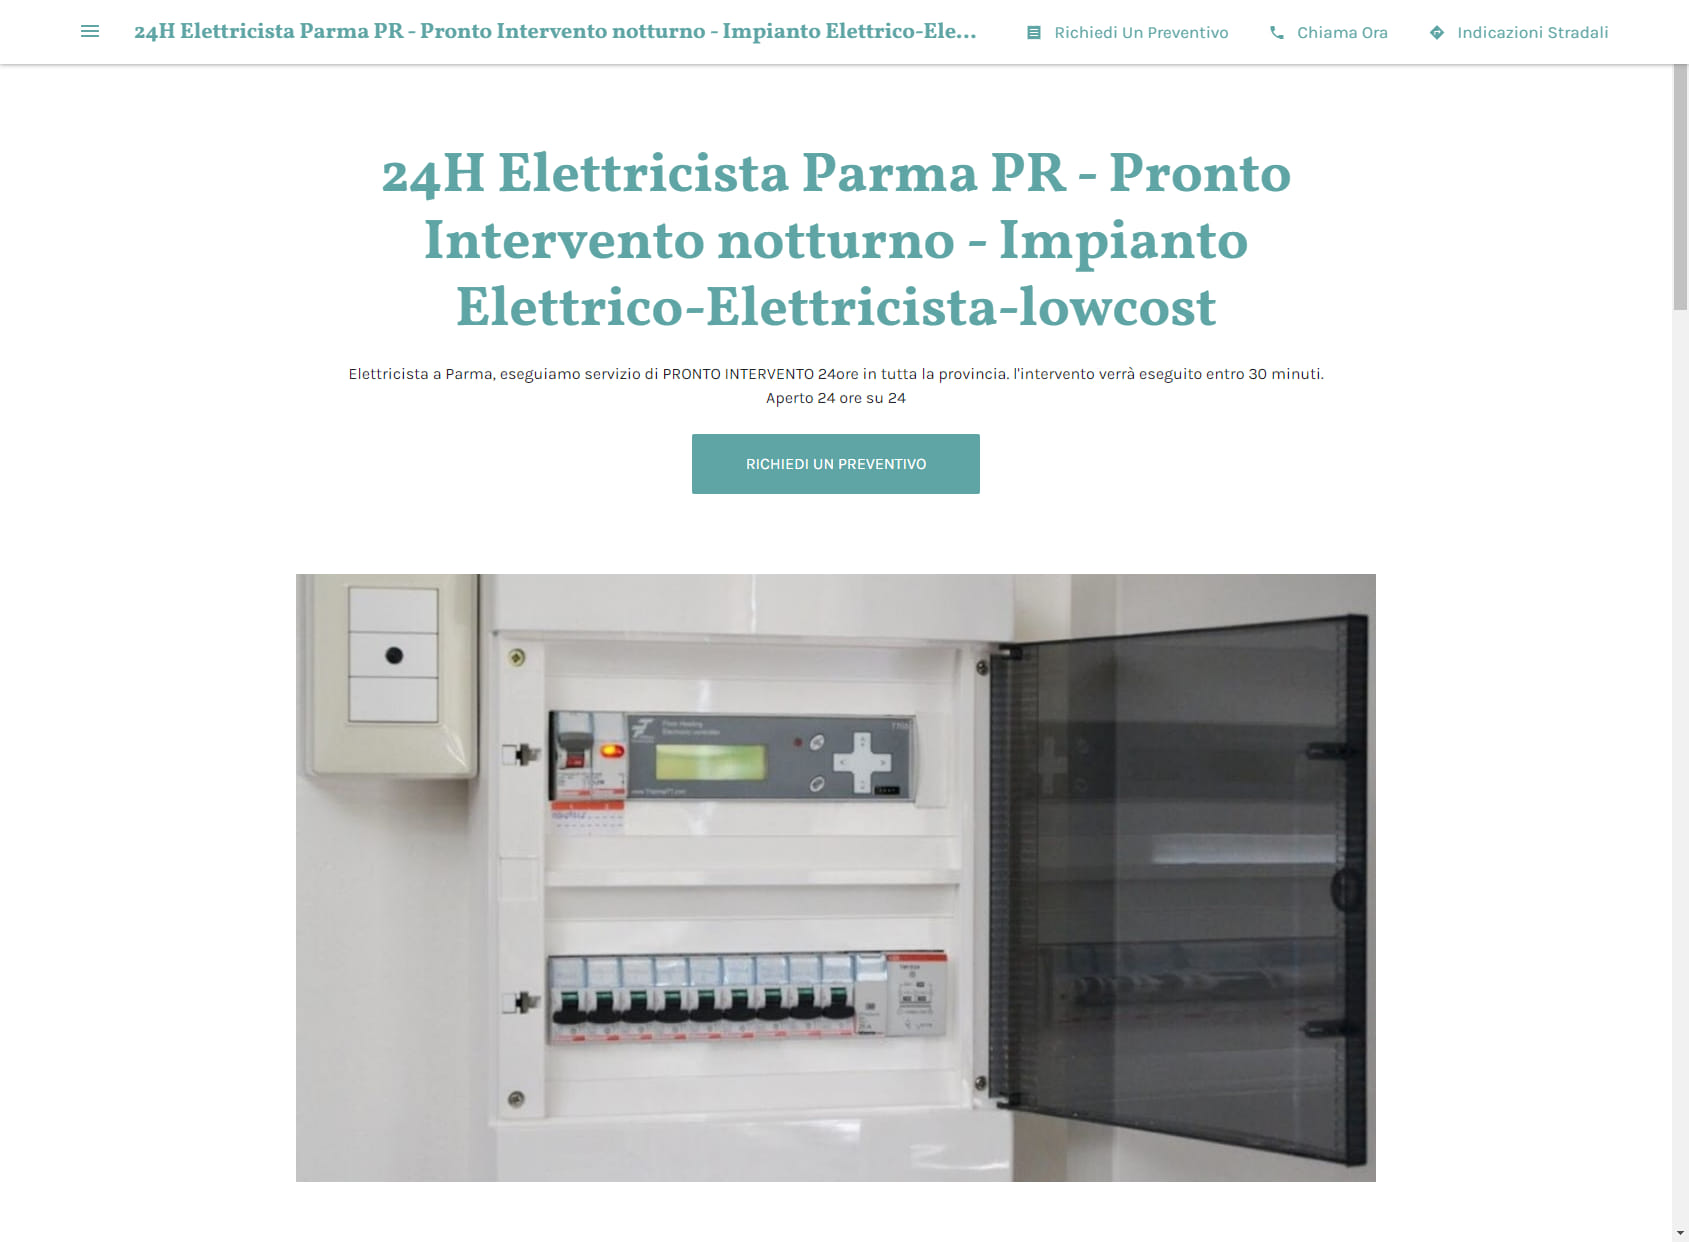 24H Elettricista Parma PR - Pronto Intervento notturno - Impianto Elettrico-Elettricista-lowcost